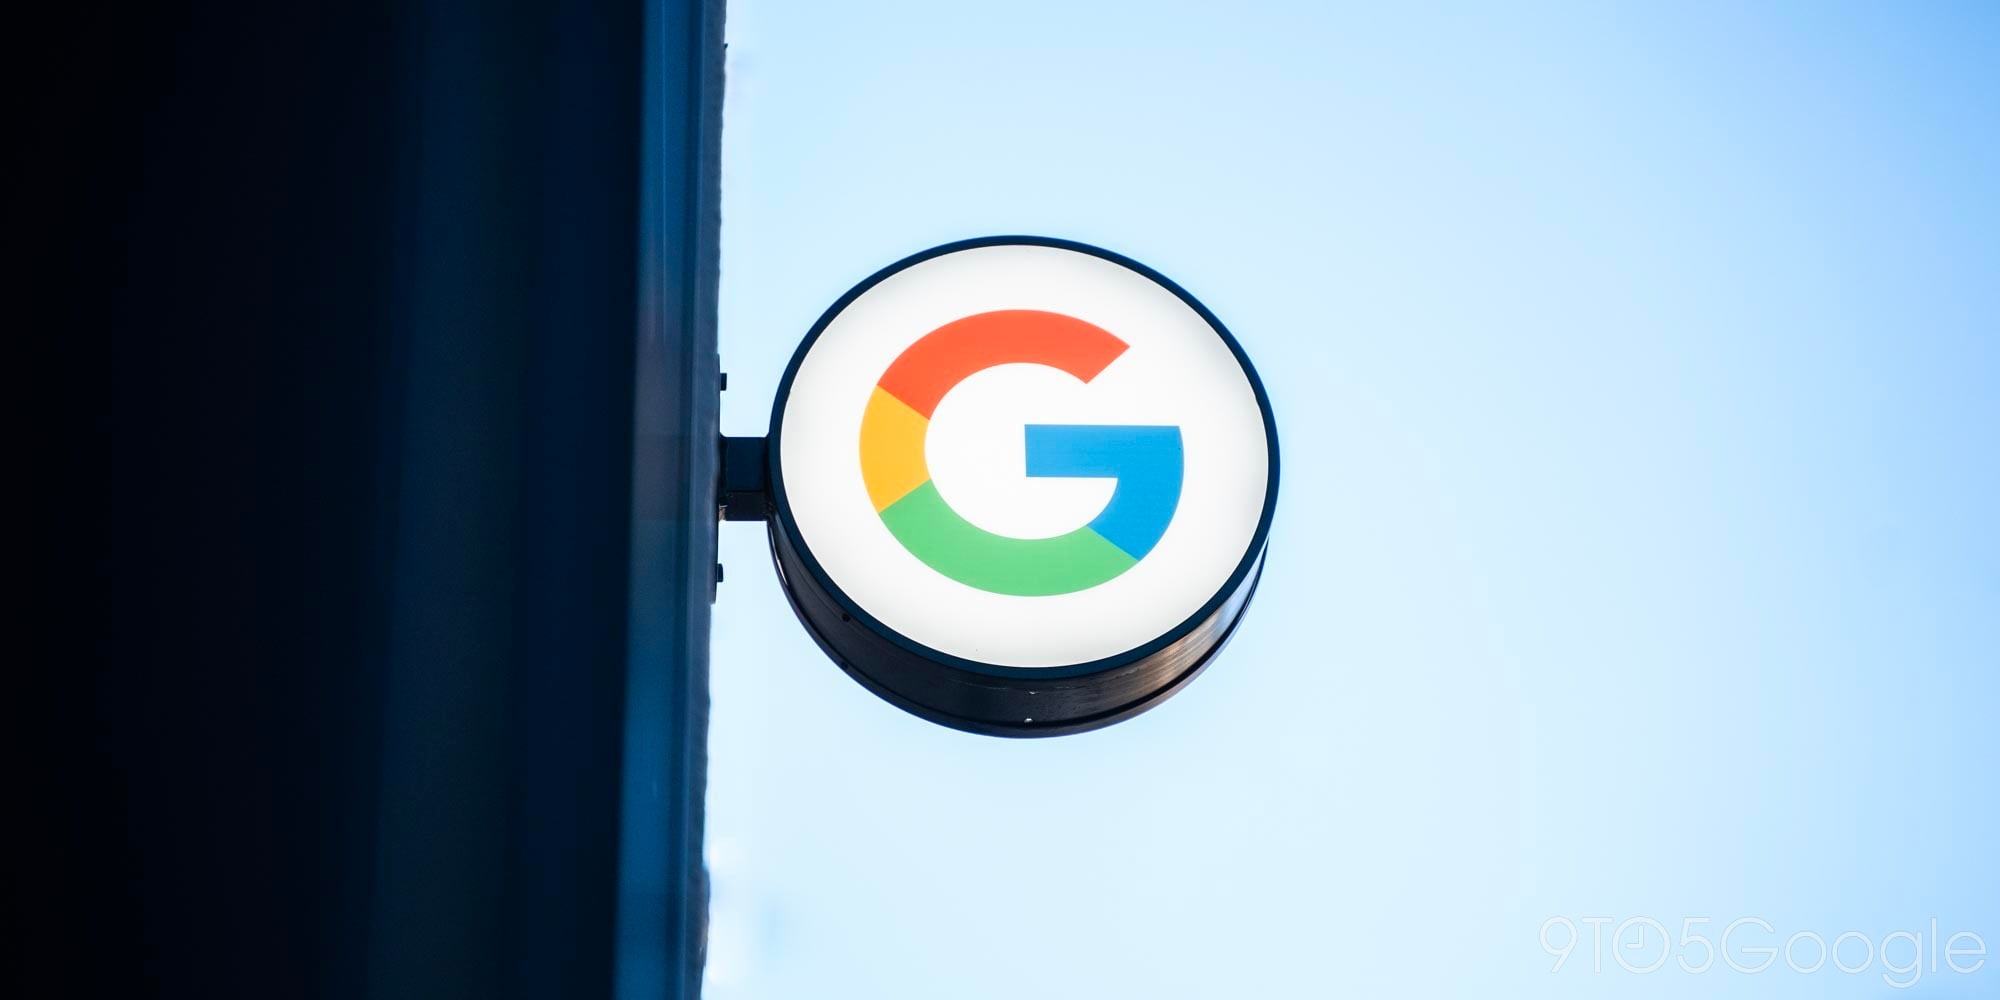 Tận hưởng ngay màn hình Google Pixel 3 đẹp như tranh vẽ với bức hình nền tuyệt đẹp này! Các chi tiết mịn màng và màu sắc trung thực sẽ khiến cho chiếc điện thoại của bạn thêm phần đẳng cấp.